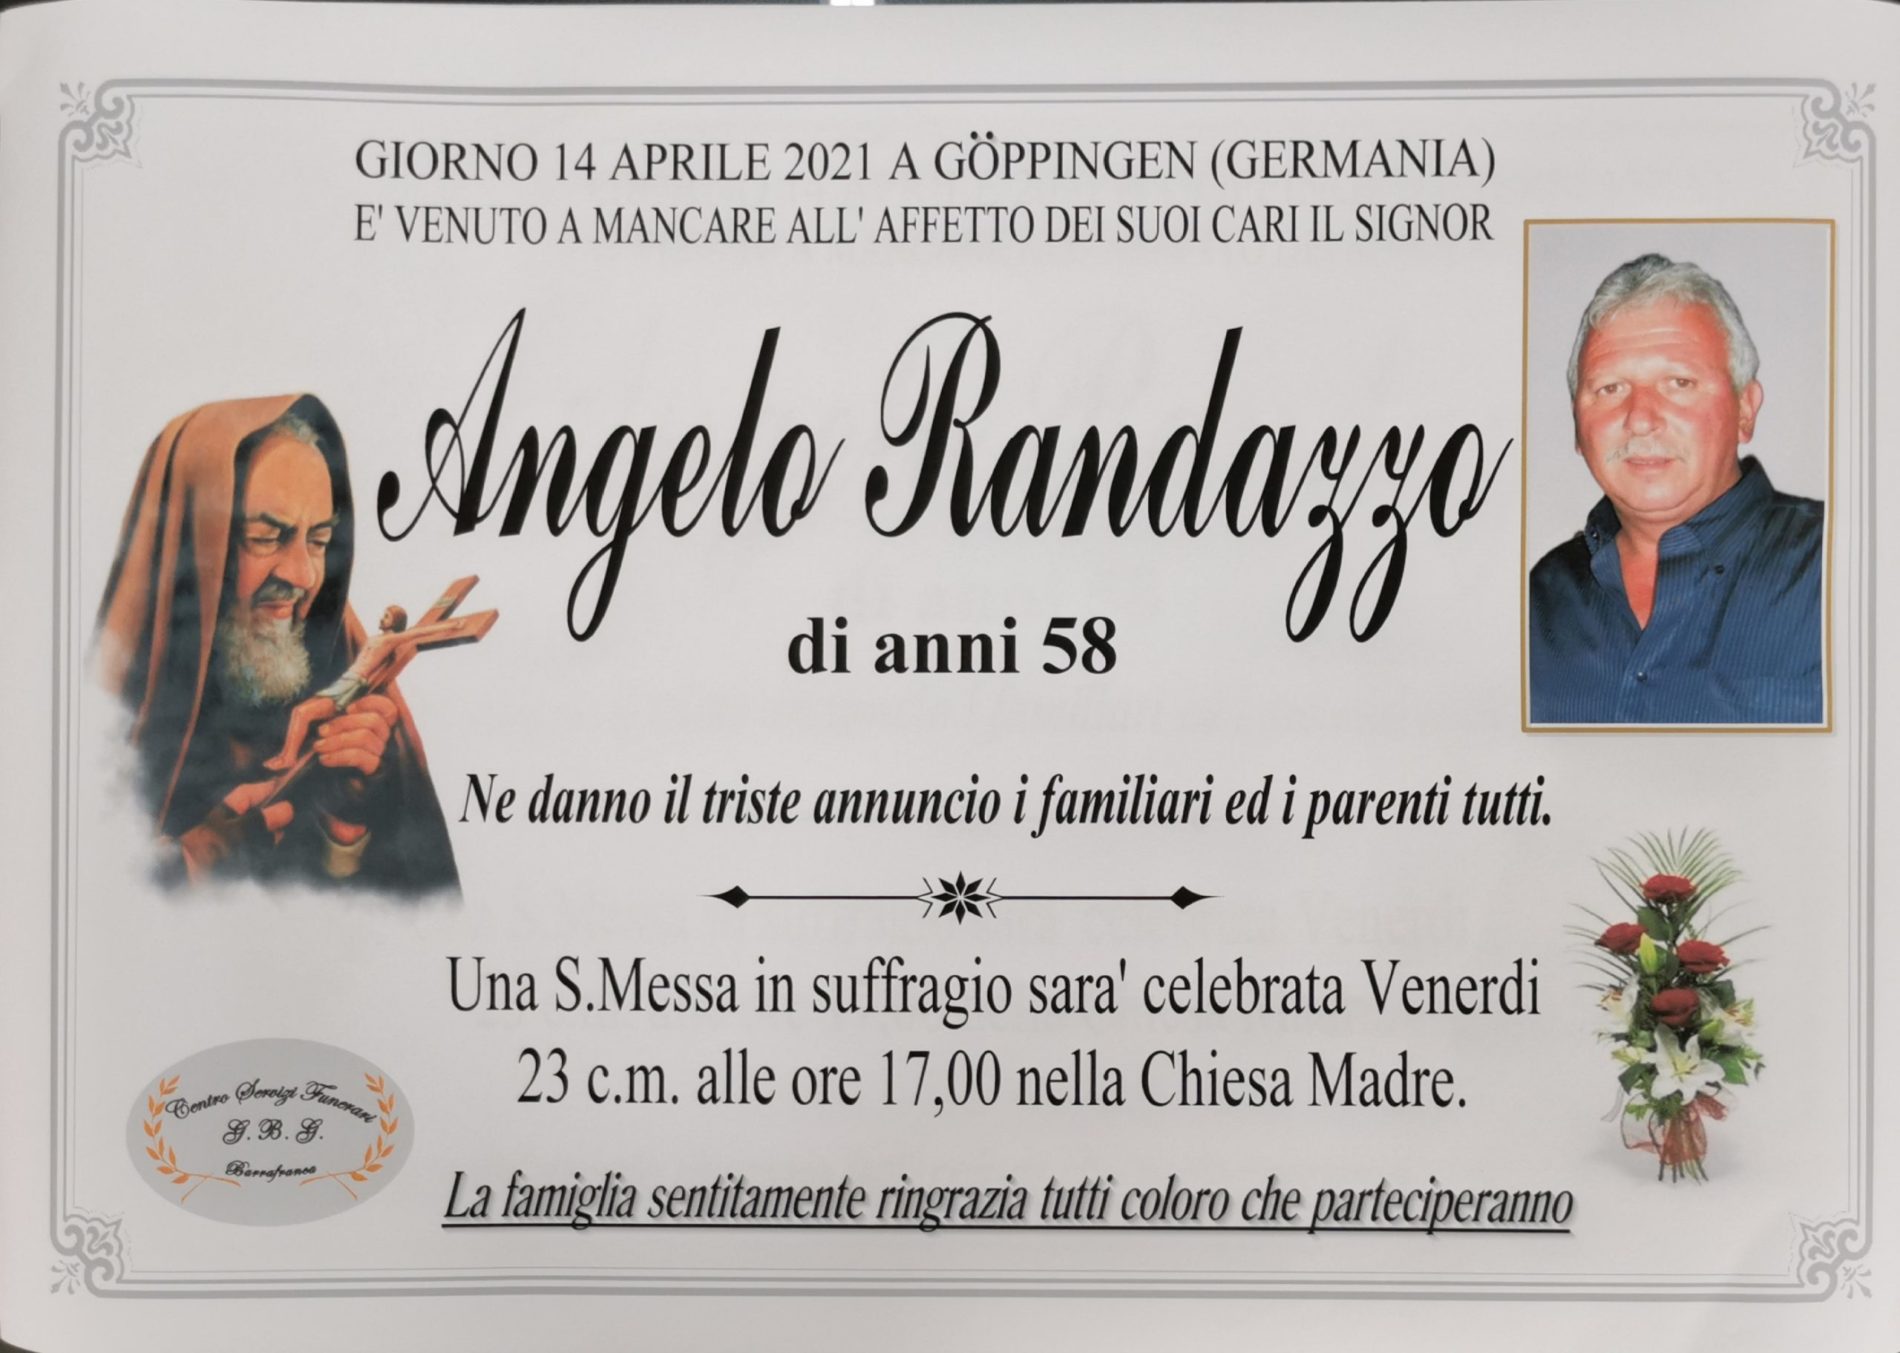 Annuncio servizi funerari agenzia G.B.G. sig Randazzo Angelo di anni 58